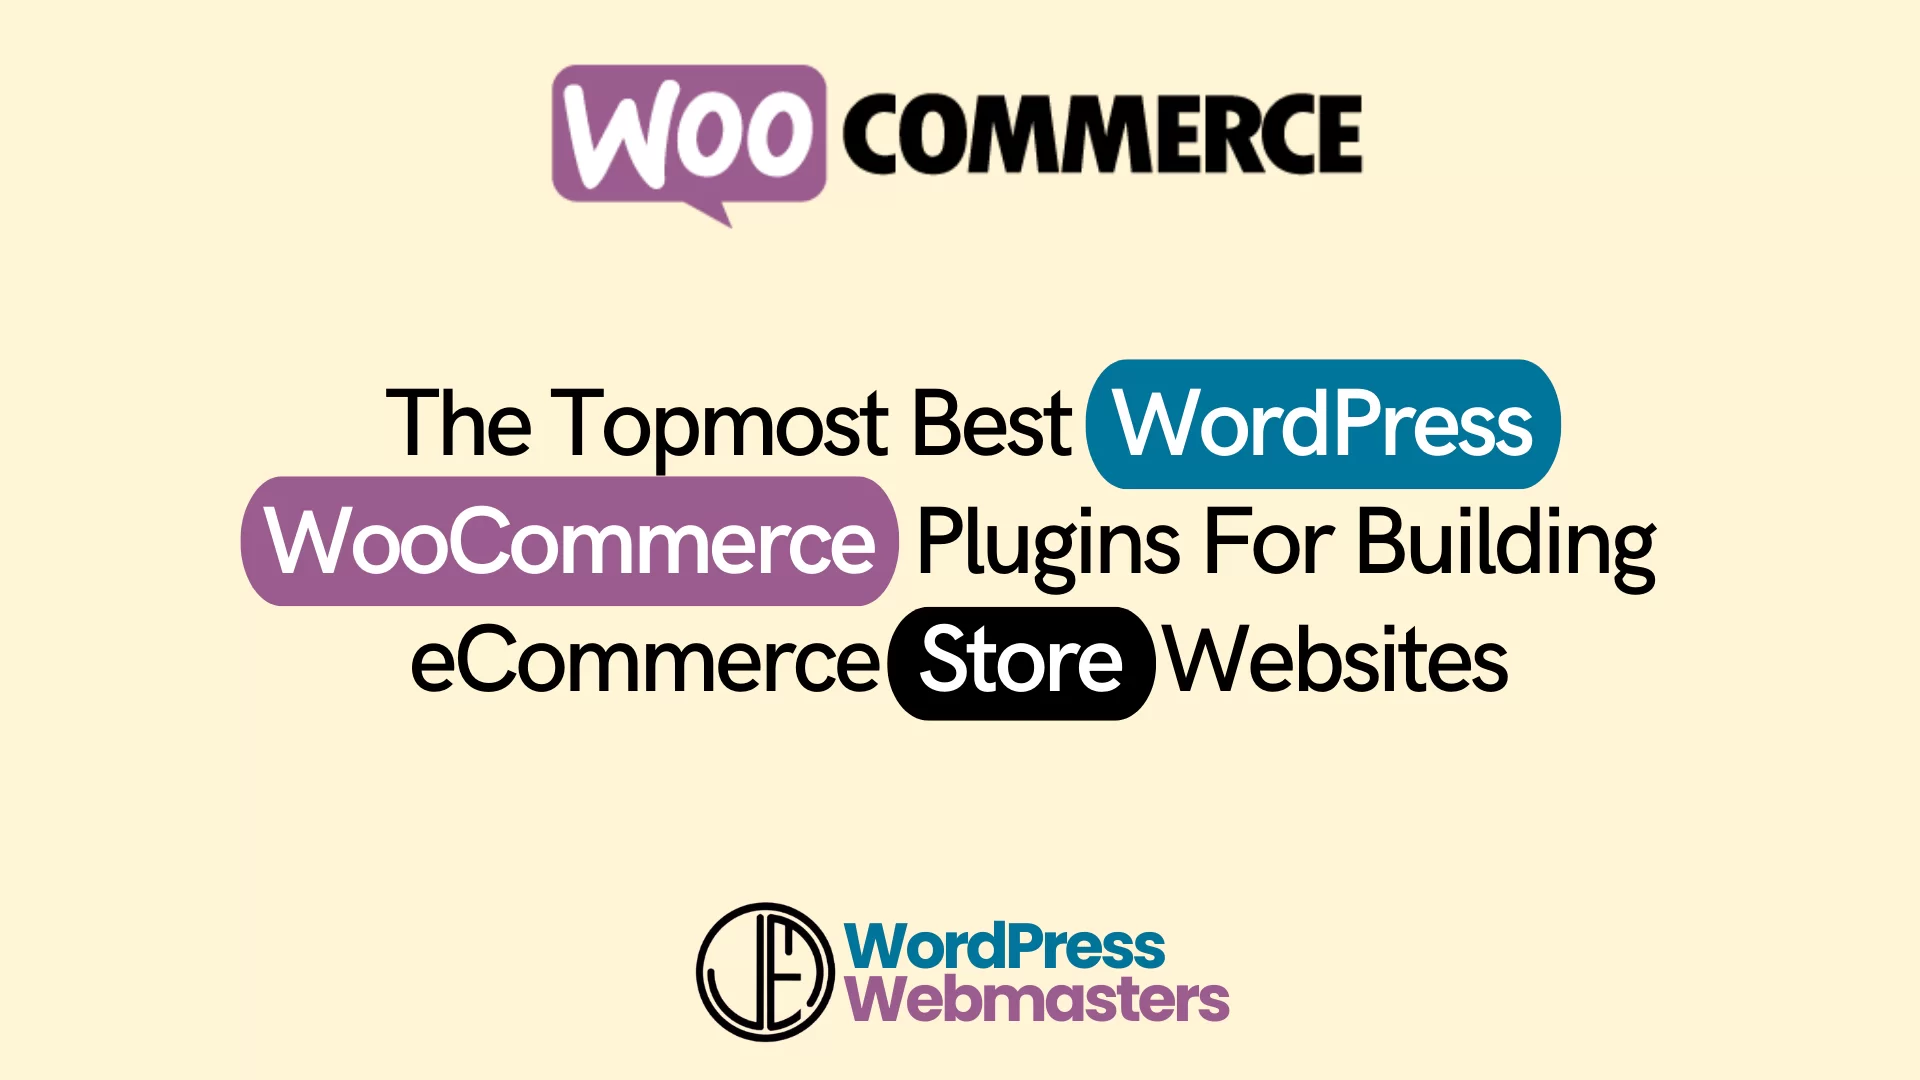 WooCommerce WP Ecommerce Plugins